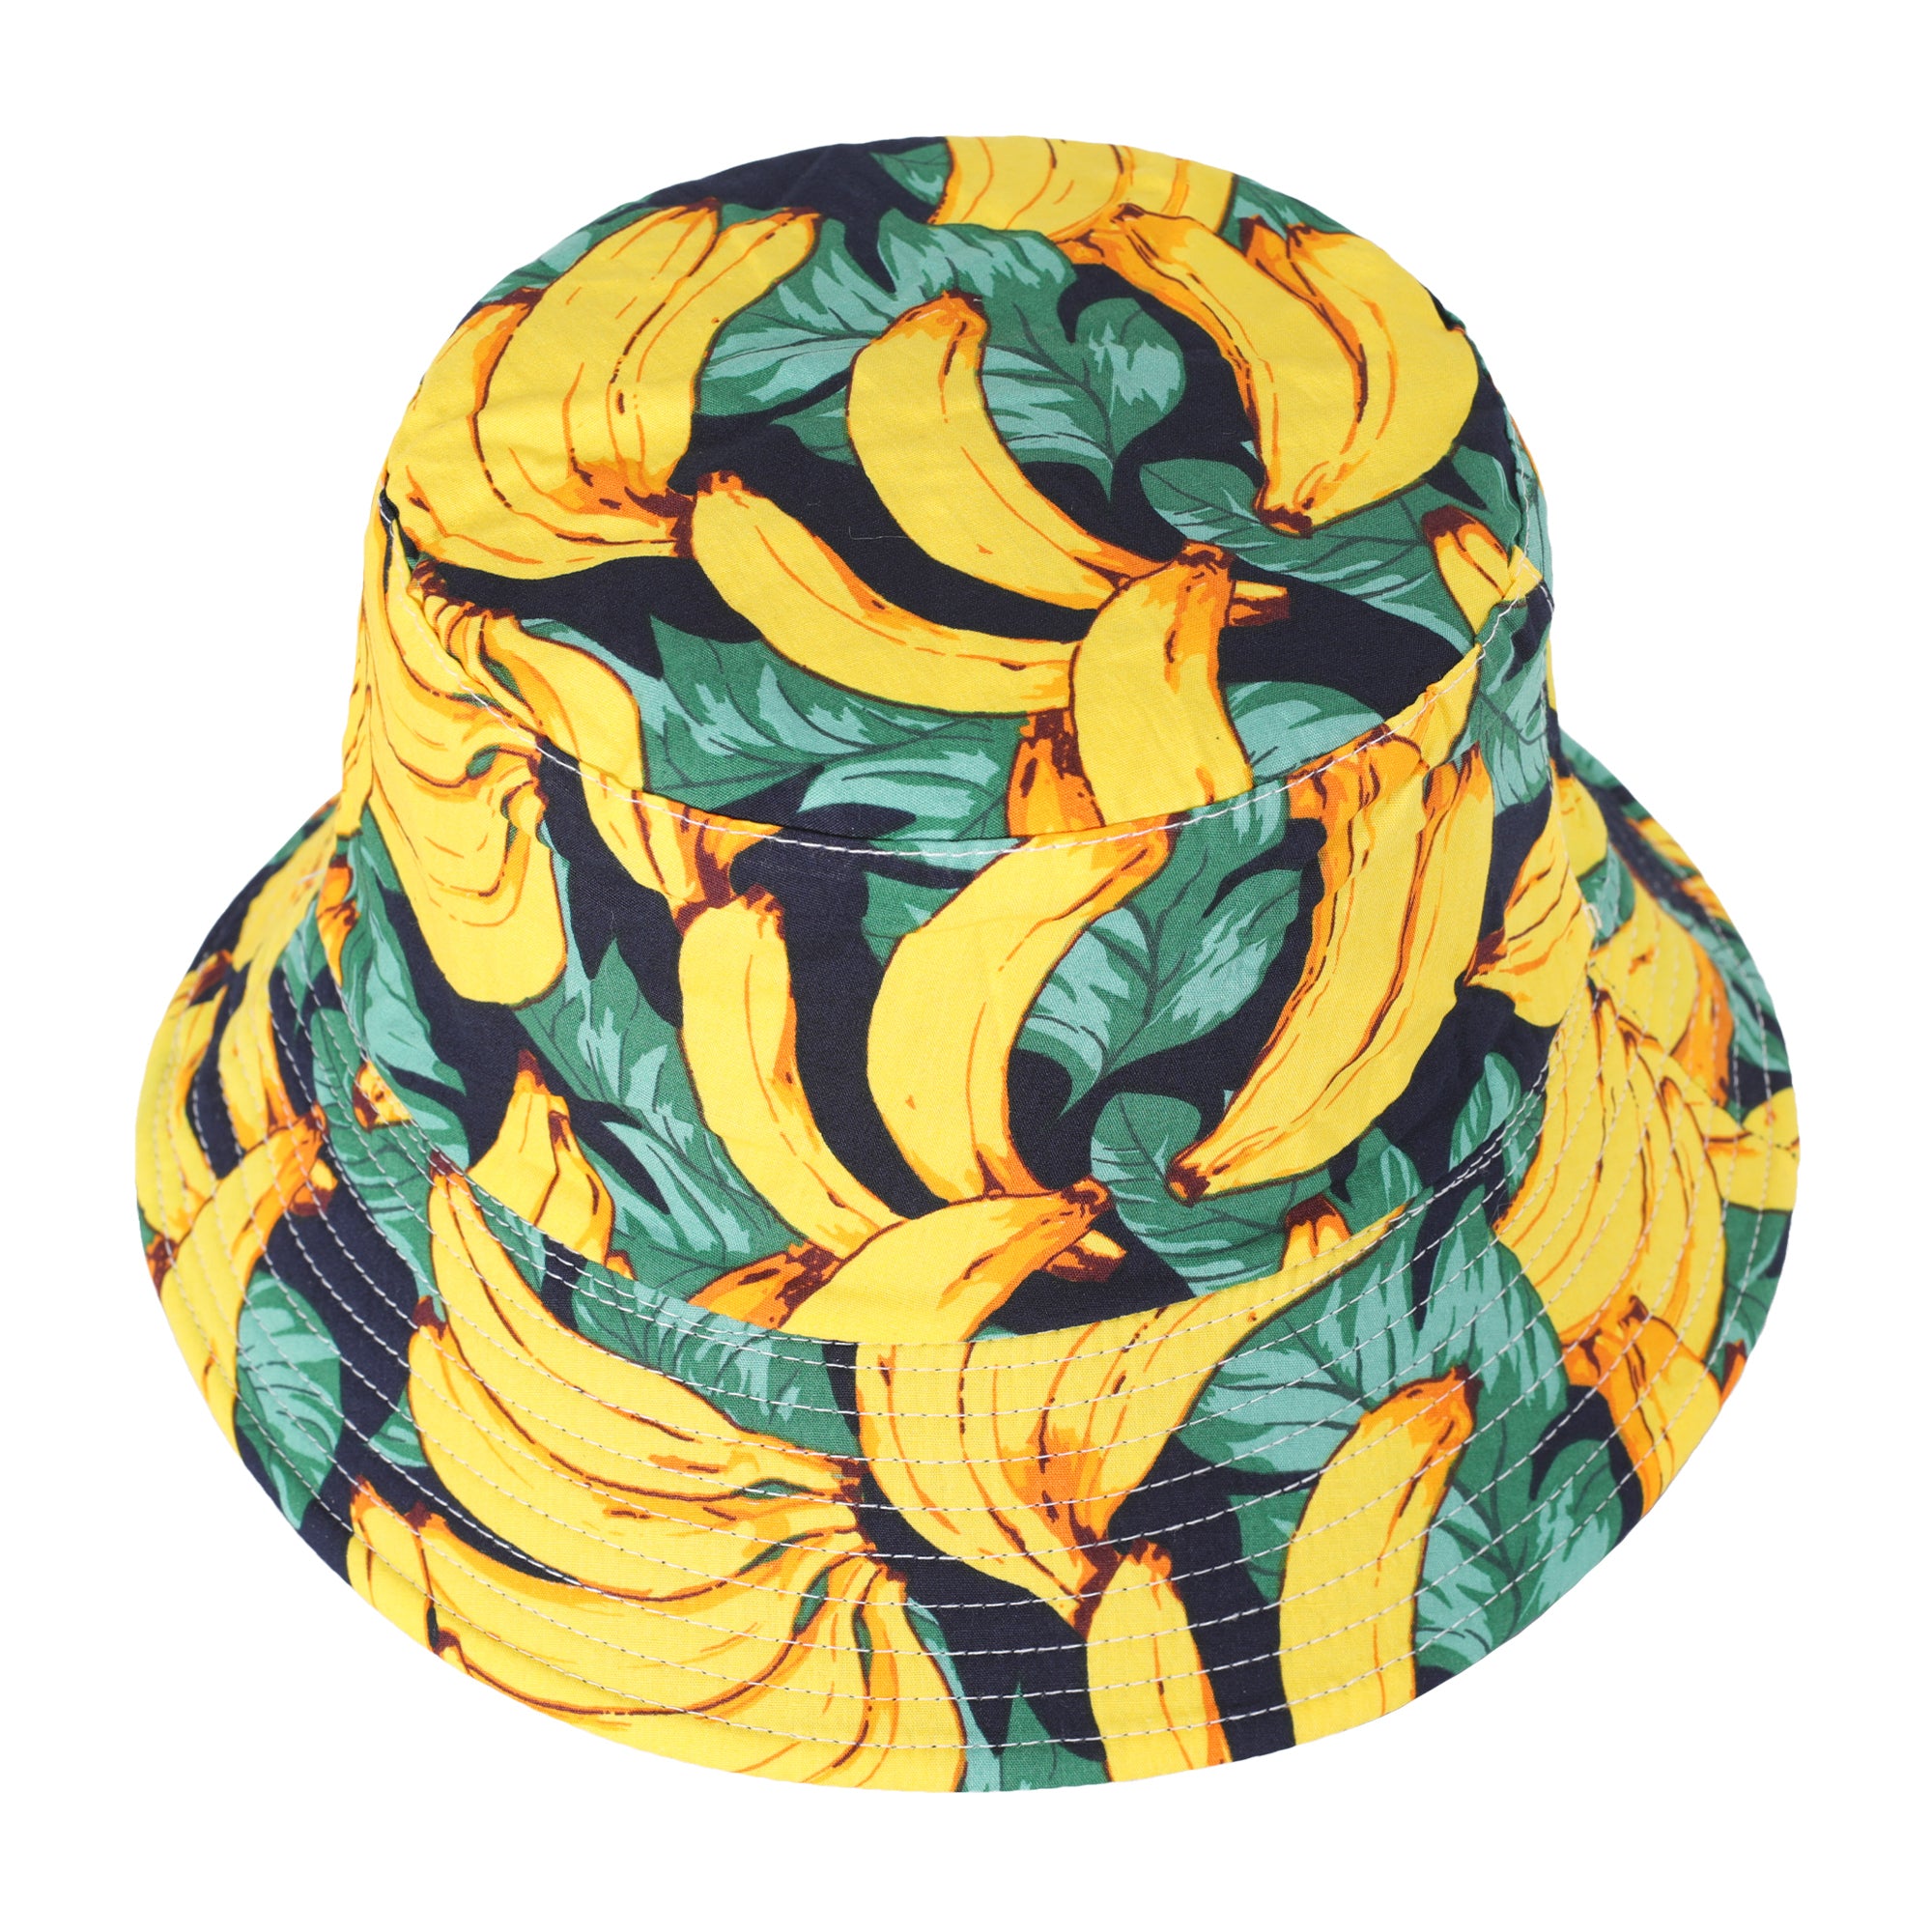 Banana Bucket Hat · Rversible